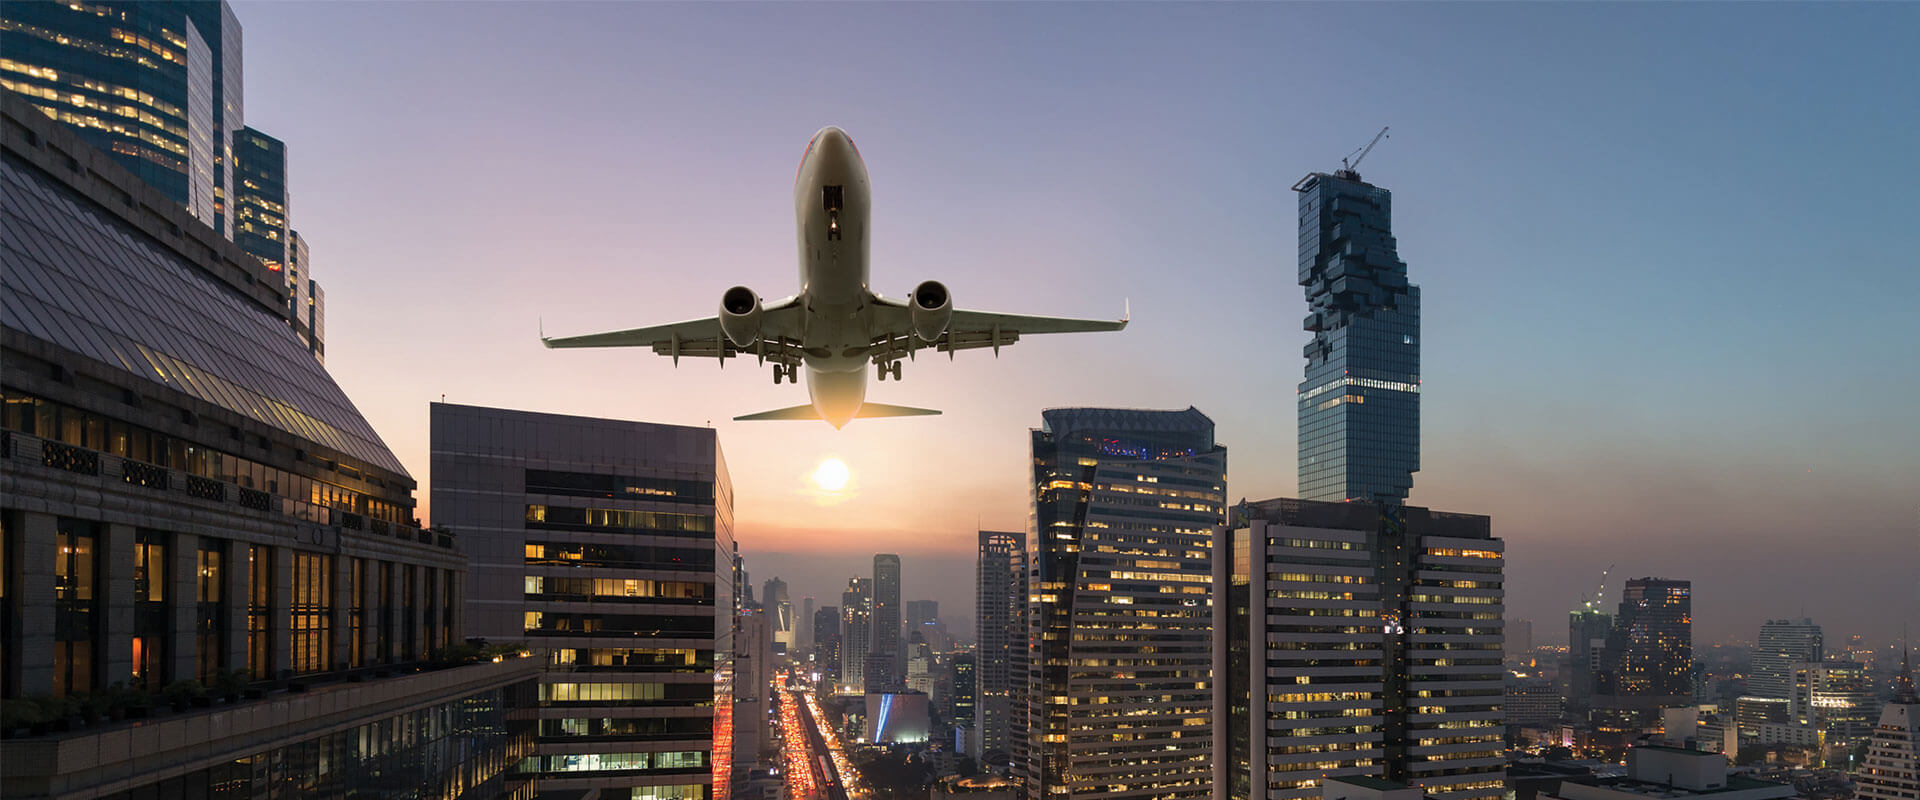 Ценность инженерных разработок: помощь авиакомпаниям в возвращении к работе